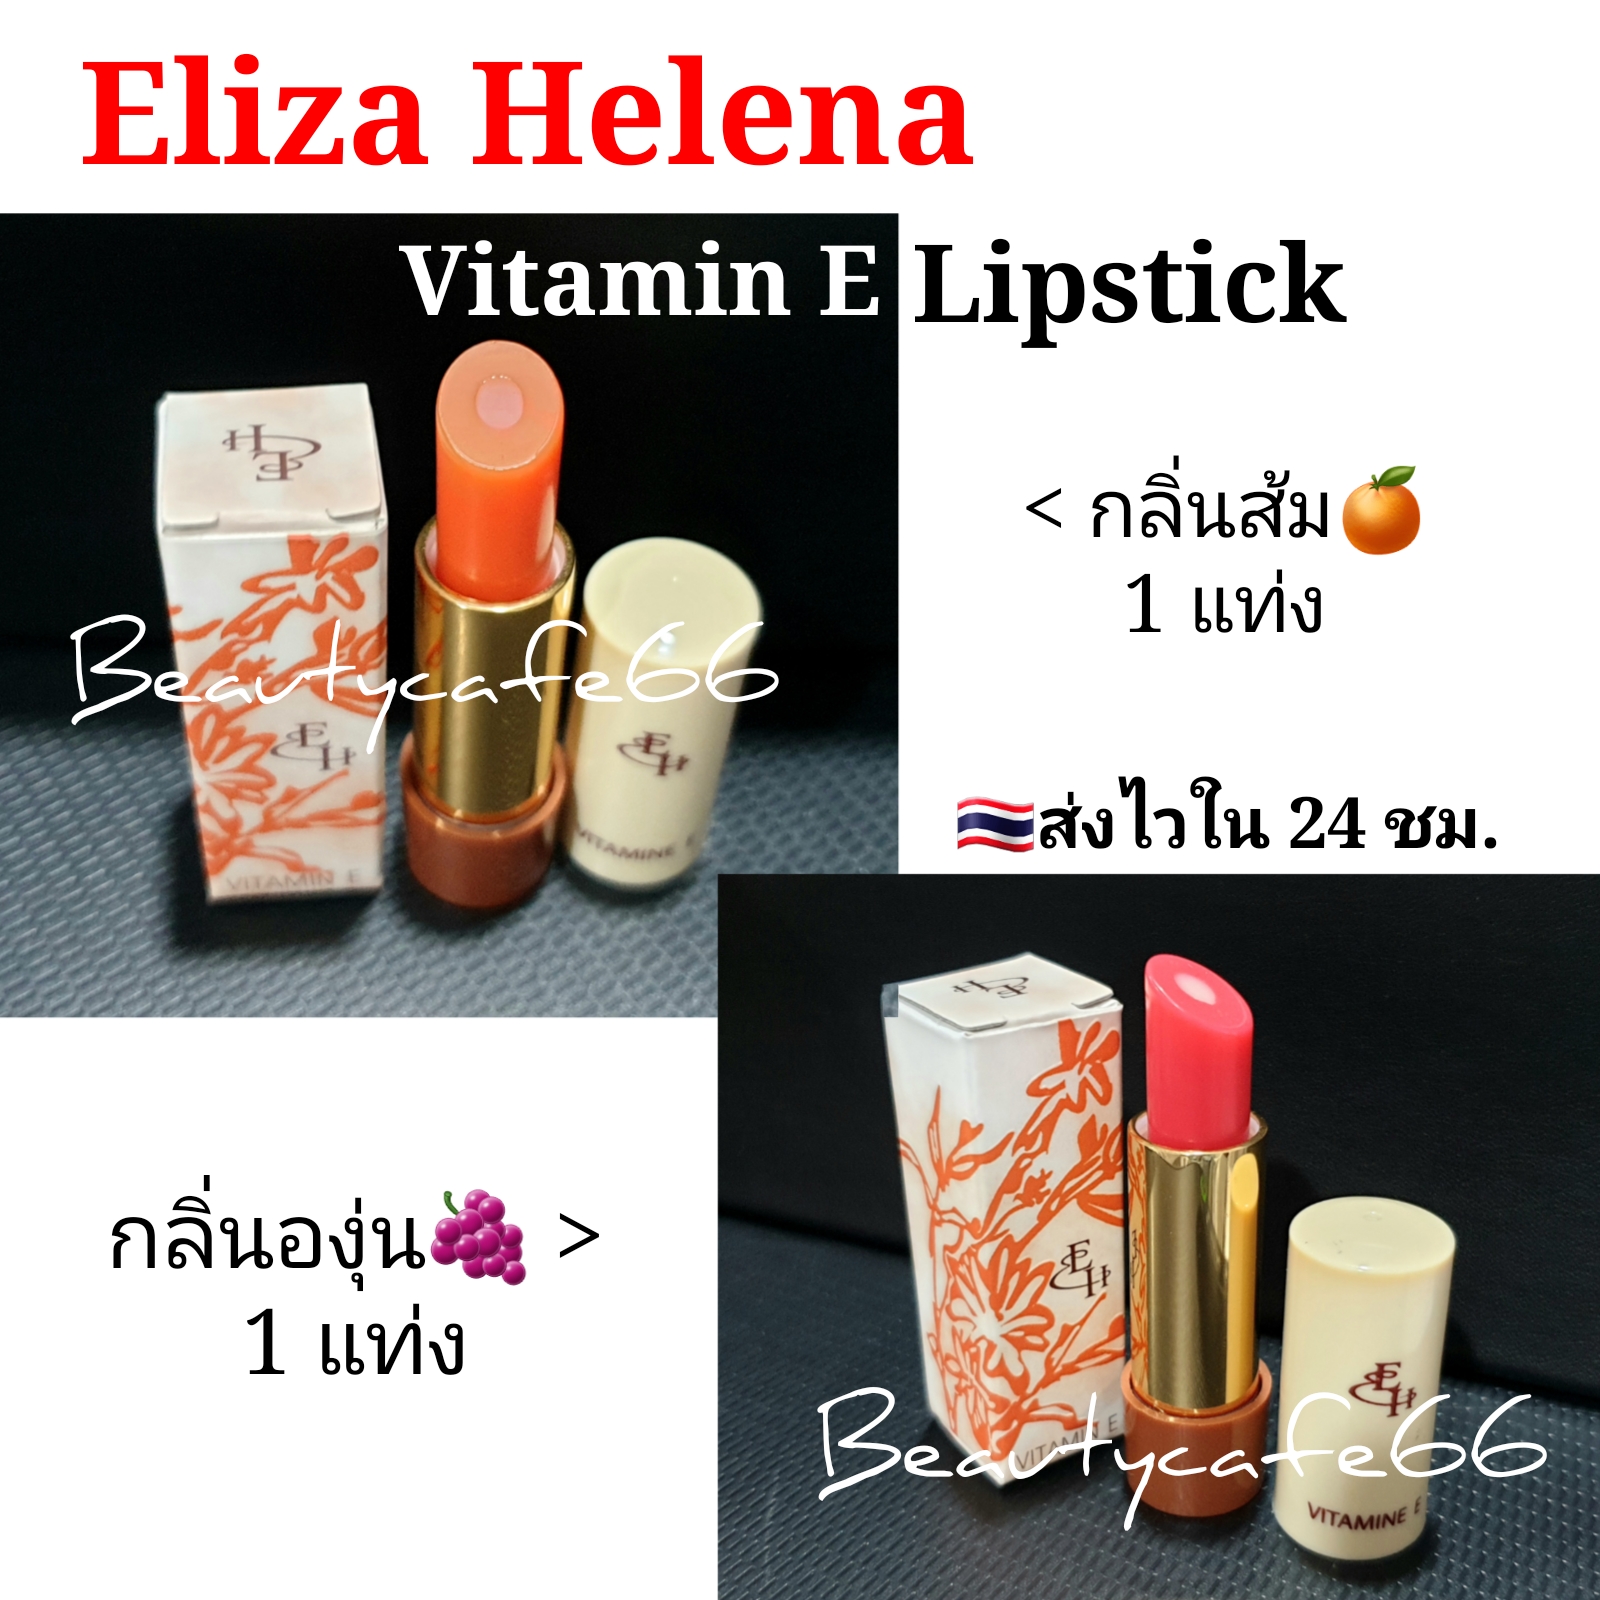 (1 แท่ง เลือกกลิ่น) Eliza Helena เอลิซ่า เฮเล็นน่า ลิปมันเปลี่ยนสี กลิ่นองุ่น ลิปองุ่น ลิปส้ม ลิปวิตามินอี Vitamin E แท่งละ 3 g. EH